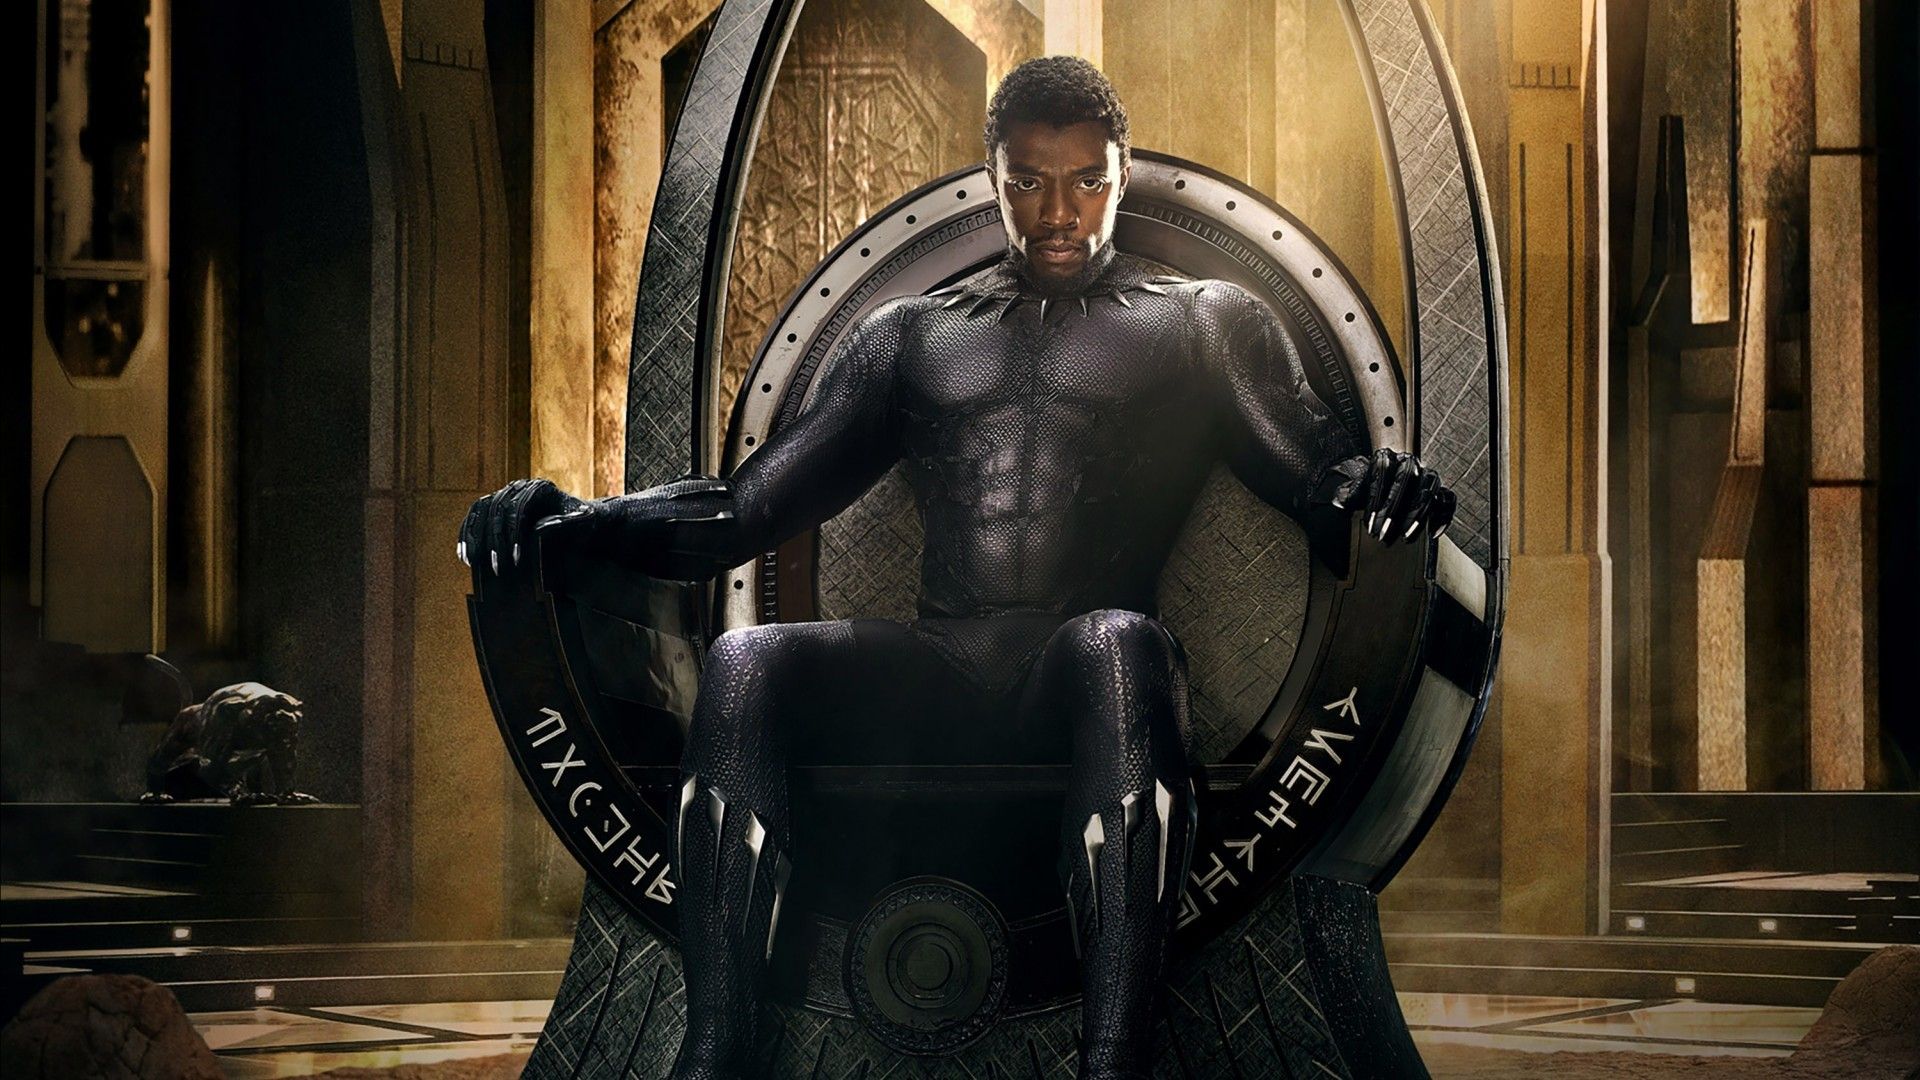 Chadwick Boseman – ngôi sao Black Panther - qua đời ở tuổi 43